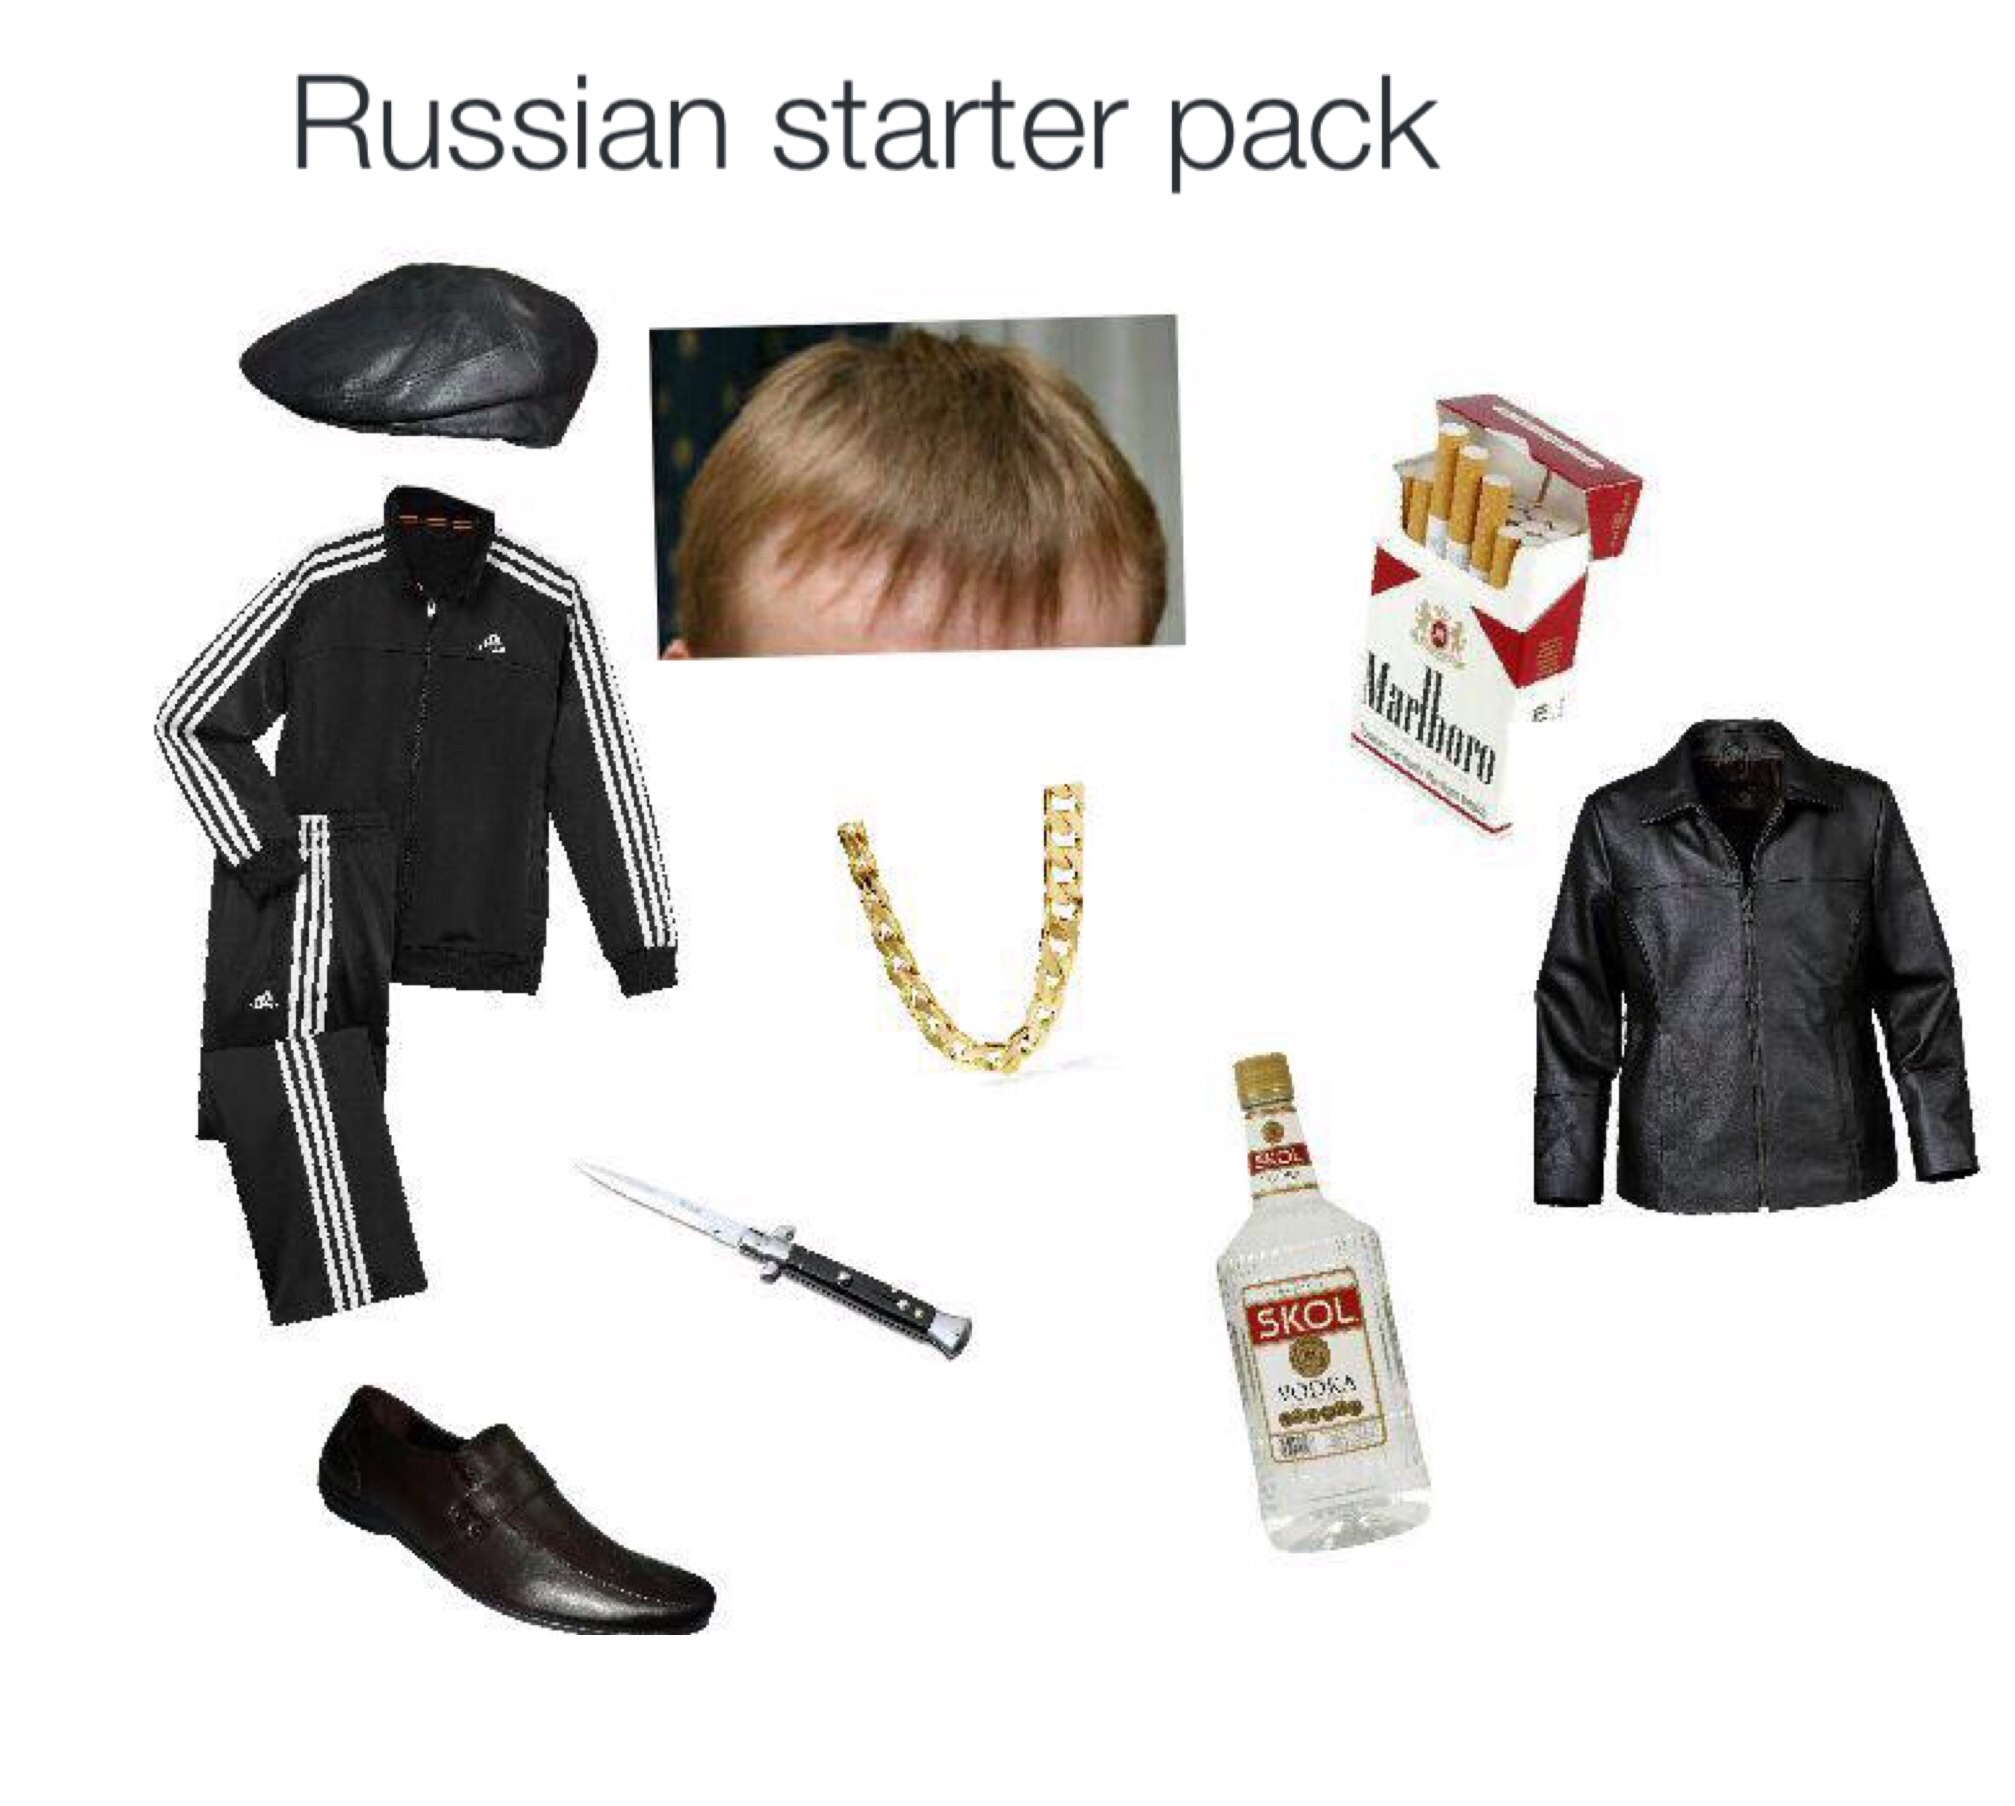 starter pack - russian starter kit - Russian starter pack Skol